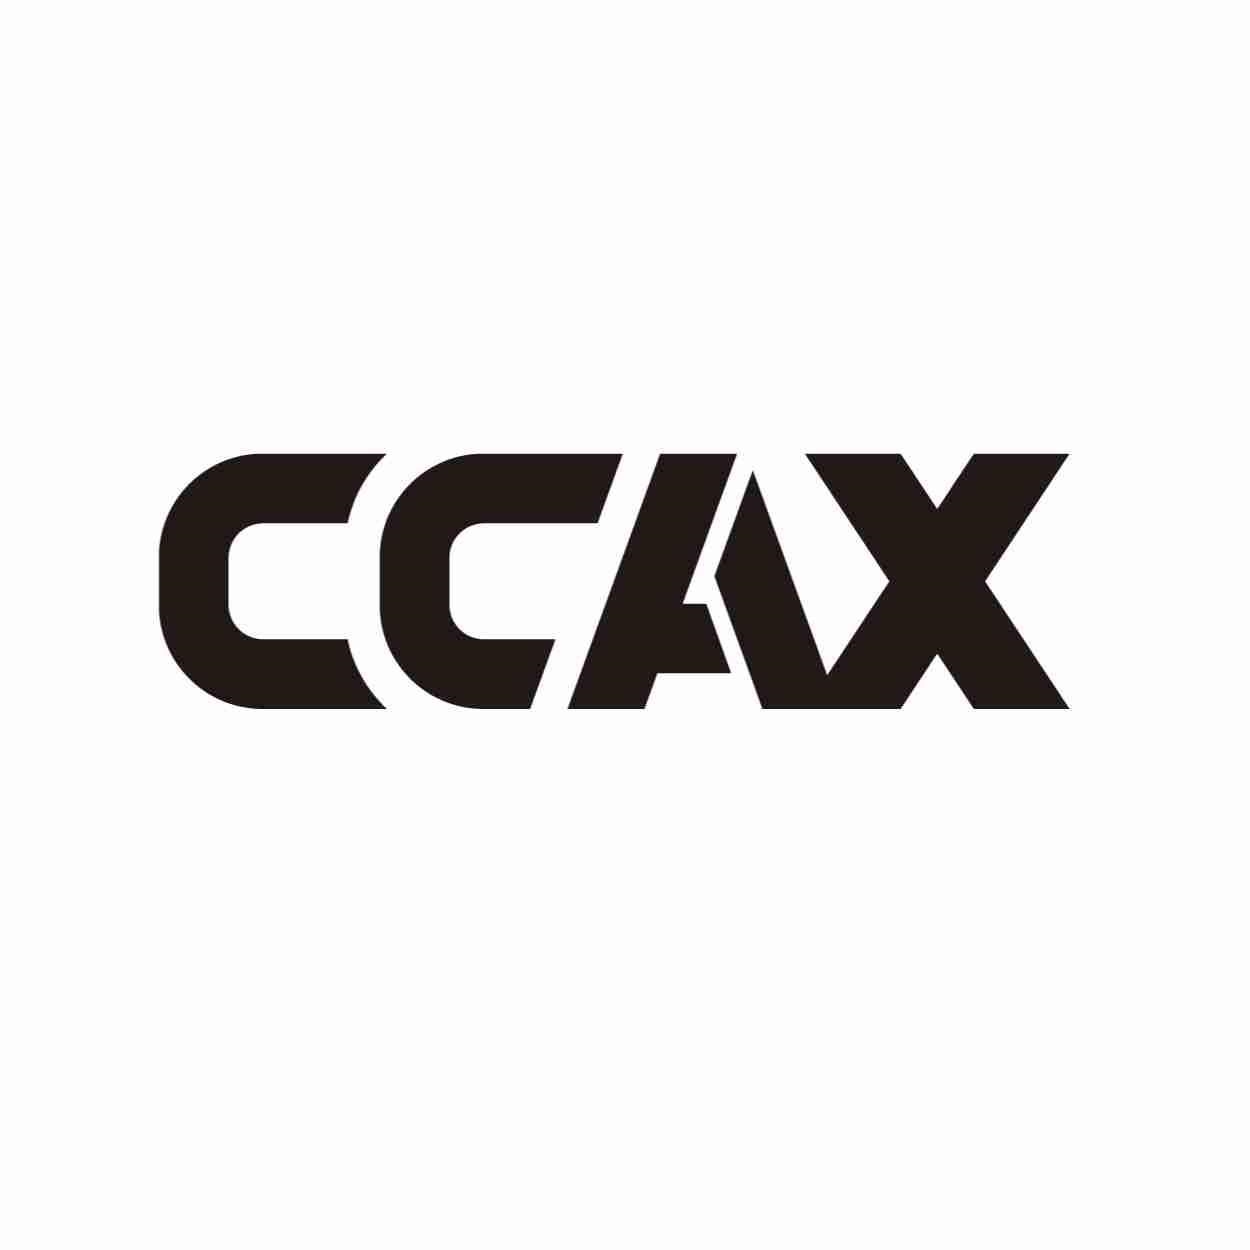 CCAX